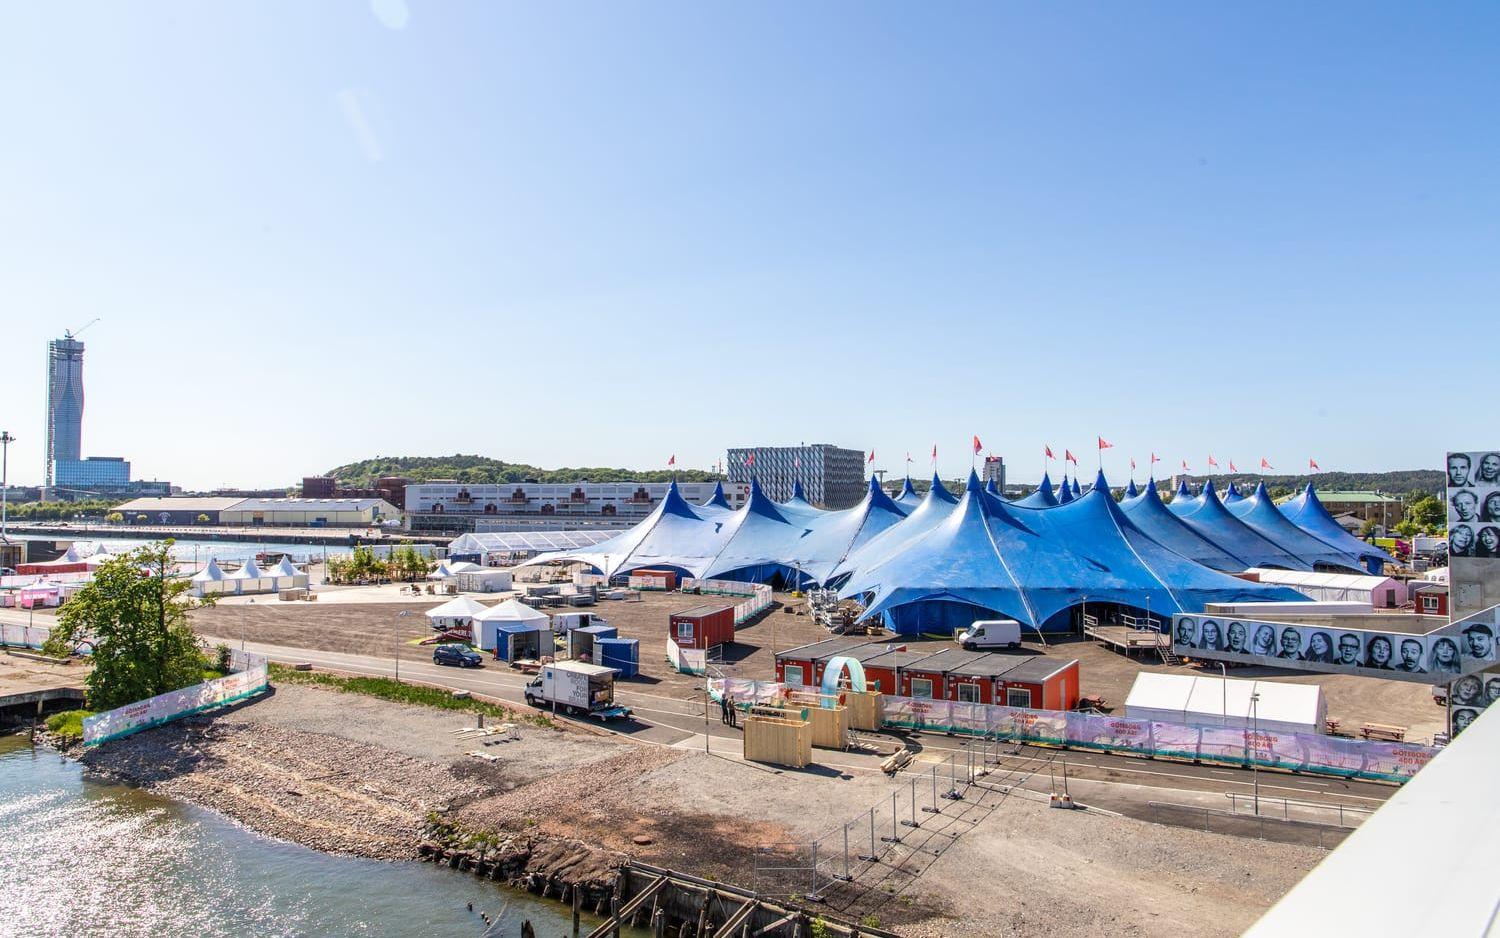 Sommarens jubileumsfirande startas med en stor festival i Frihamnen den 2 juni och pågår till och med den 5 juni. Festivalområdet är 70 000 kvadratmeter stort.